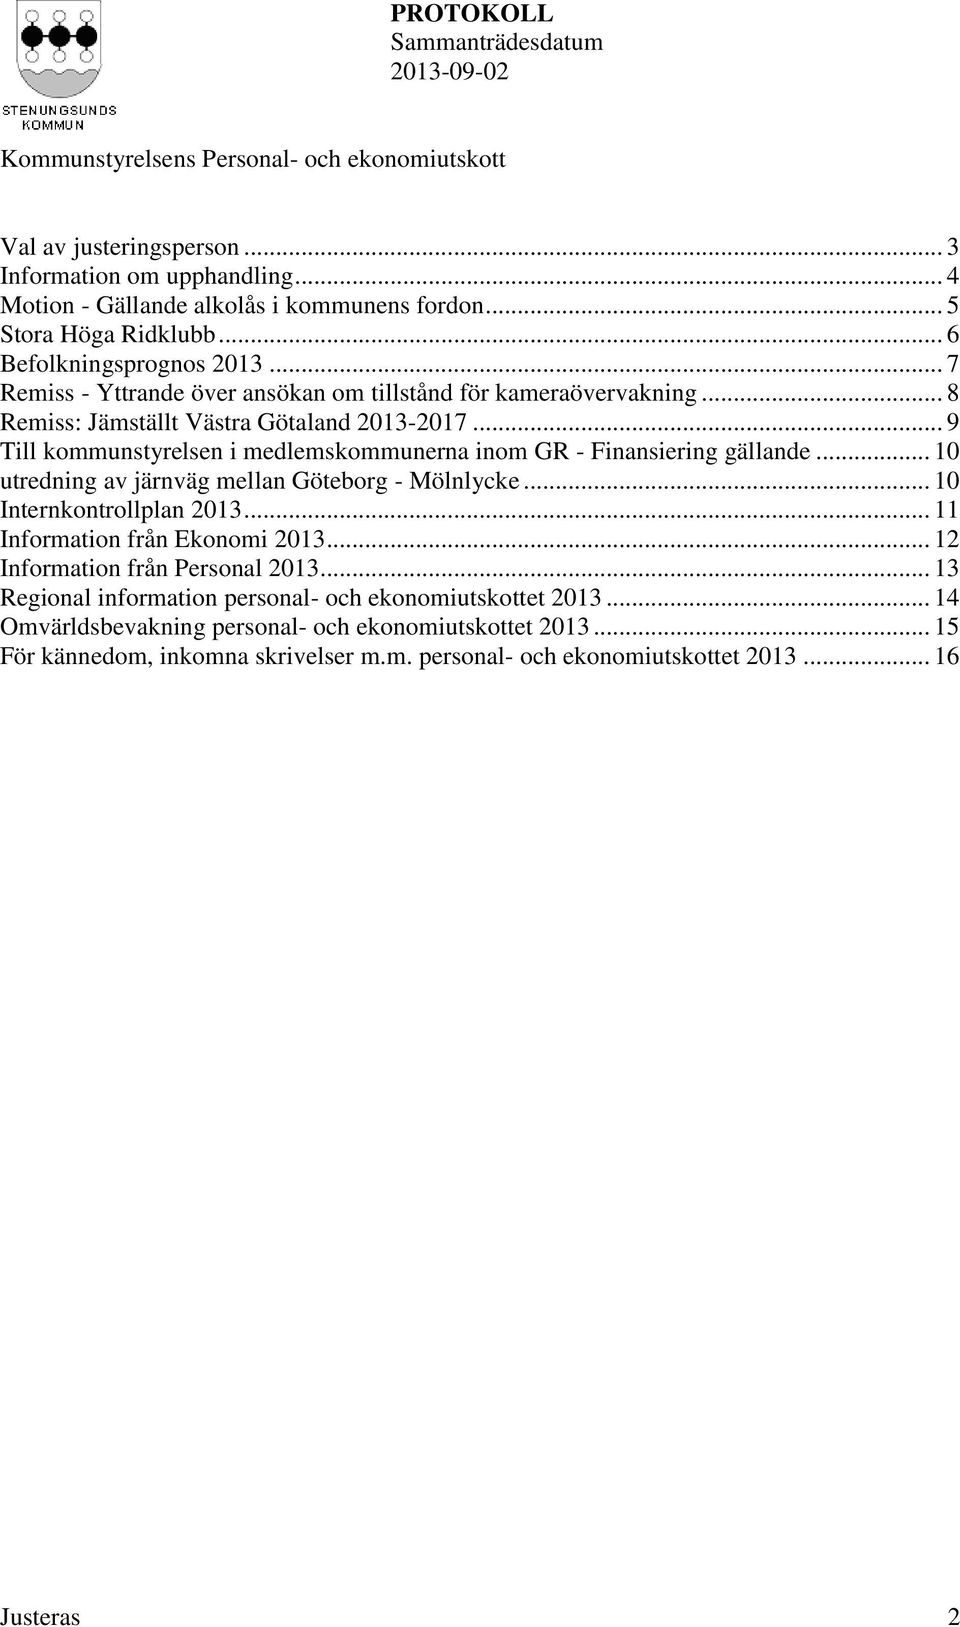 .. 9 Till kommunstyrelsen i medlemskommunerna inom GR - Finansiering gällande... 10 utredning av järnväg mellan Göteborg - Mölnlycke... 10 Internkontrollplan 2013.